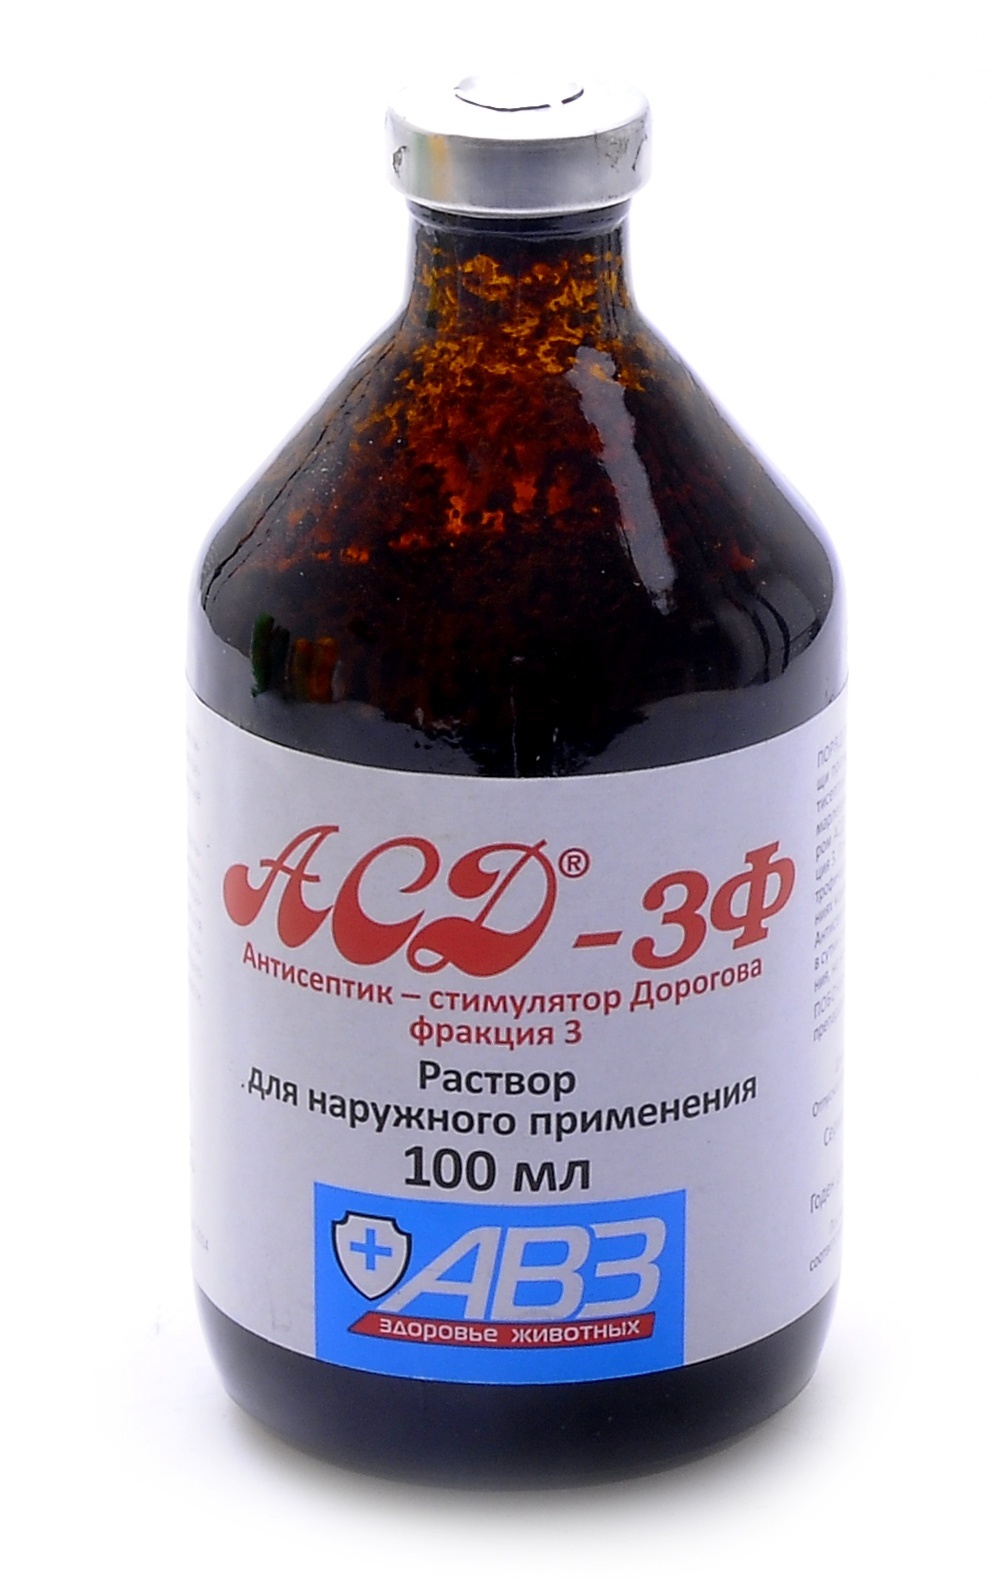 Агроветзащита Агроветзащита аСД-3 - антисептик-стимулятор Дорогова, фракция 3 (100 г) препарат авз асд 2 фракция флакон 1 антисептик 100мл